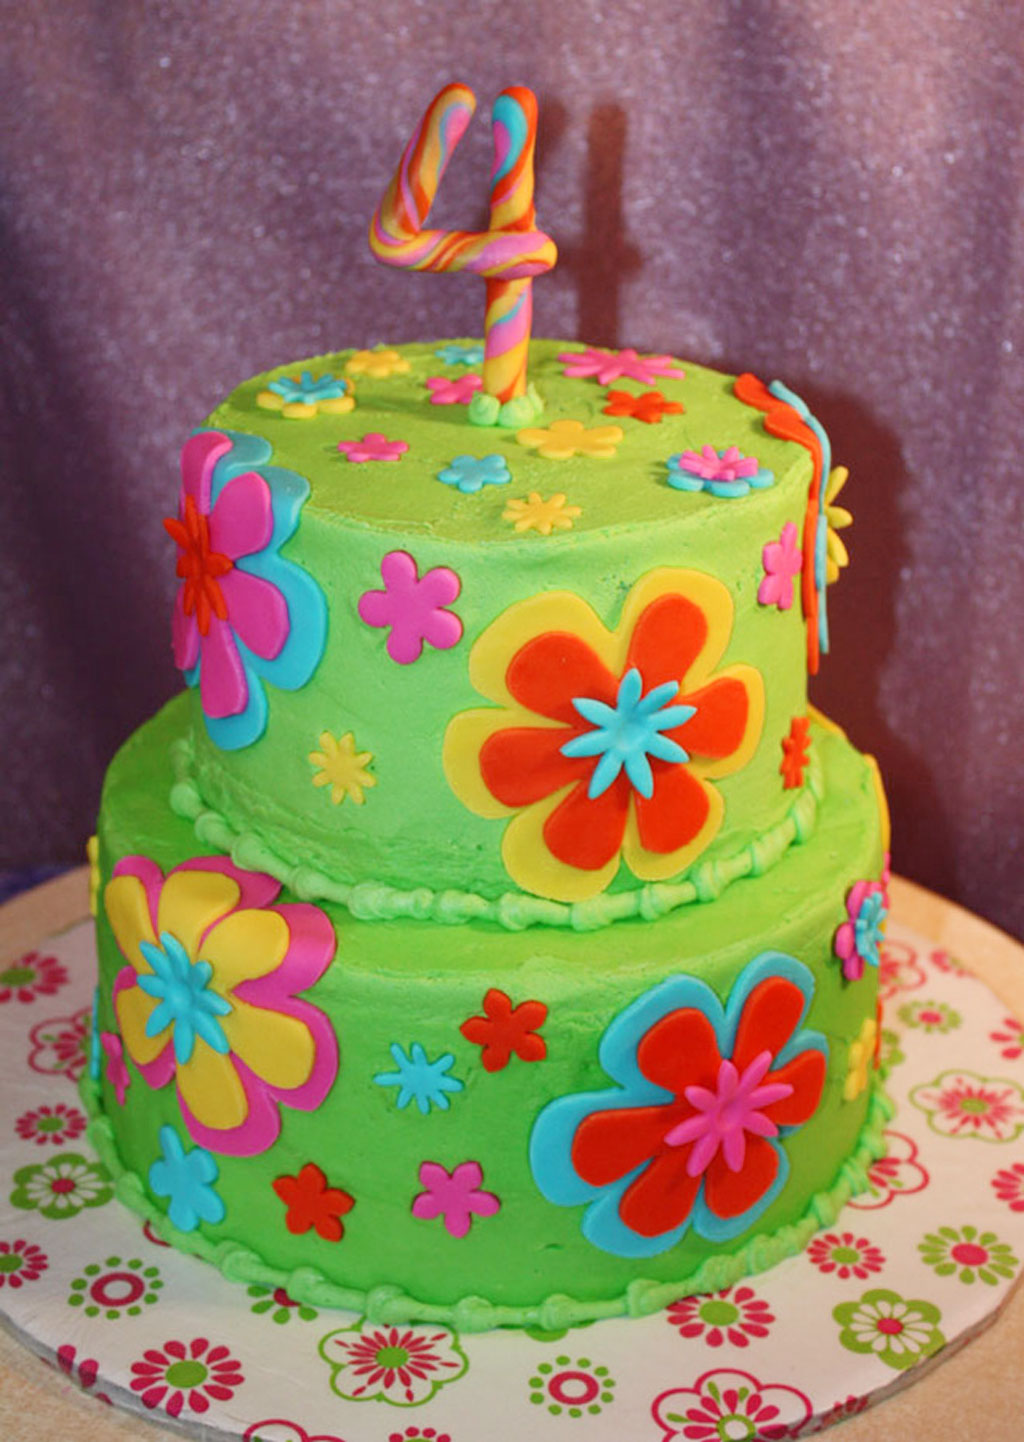 Fondant Flowers Birthday Cakes Birthday Cake - Cake Ideas ...